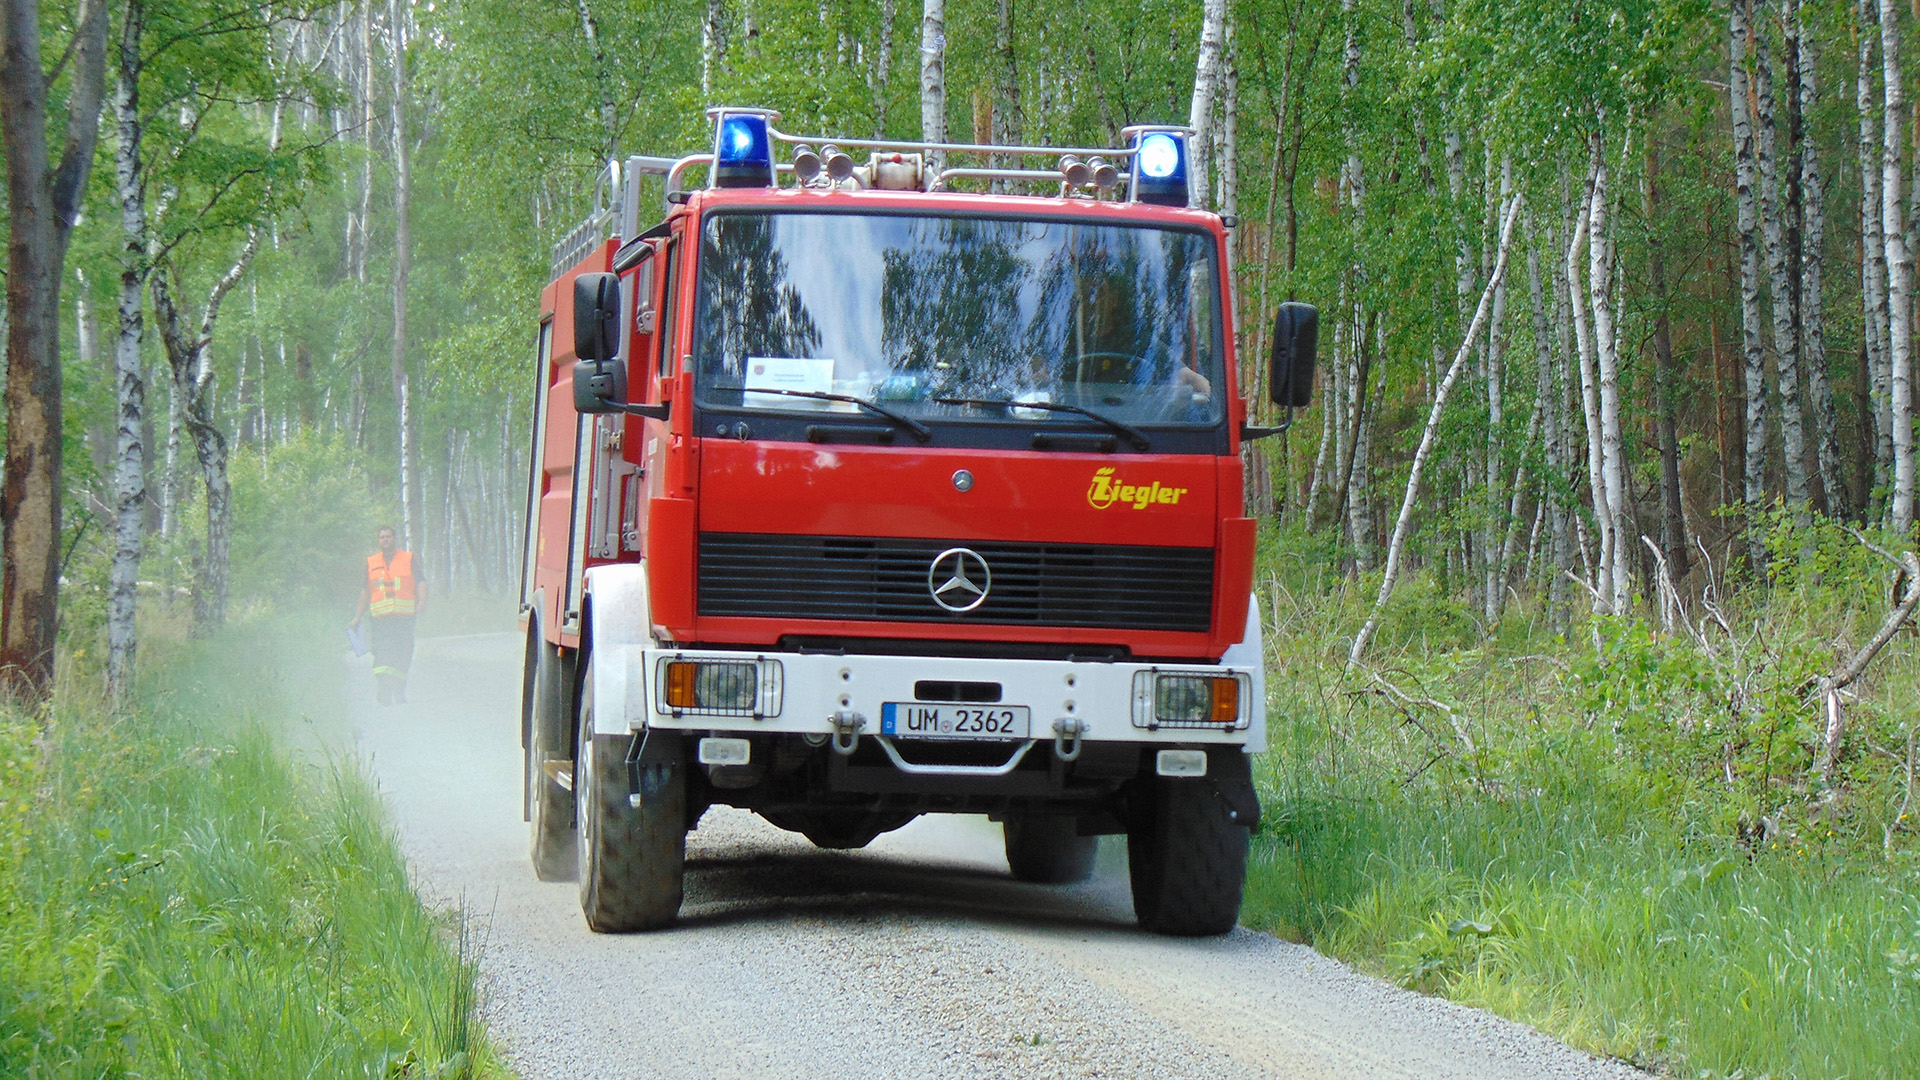 Symbolbild: Einsatzkräfte der Brandschutzeinheit BSE Uckermark am 30.05.2020. (Quelle: imago images/LausitzNews.de)